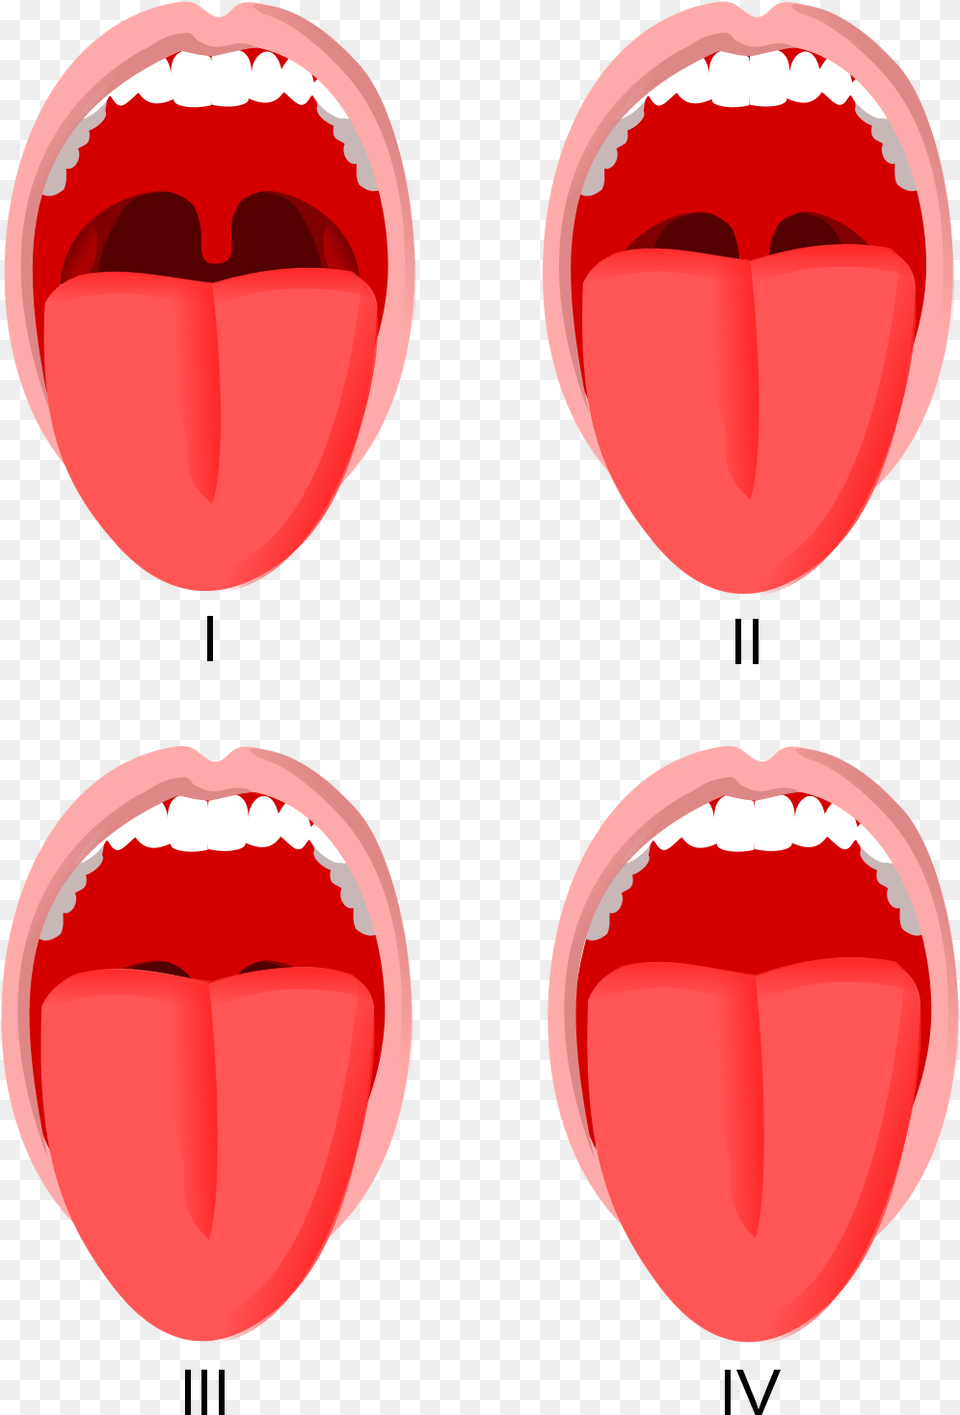 Escala De Mallampati Modificada, Body Part, Mouth, Person, Tongue Png Image